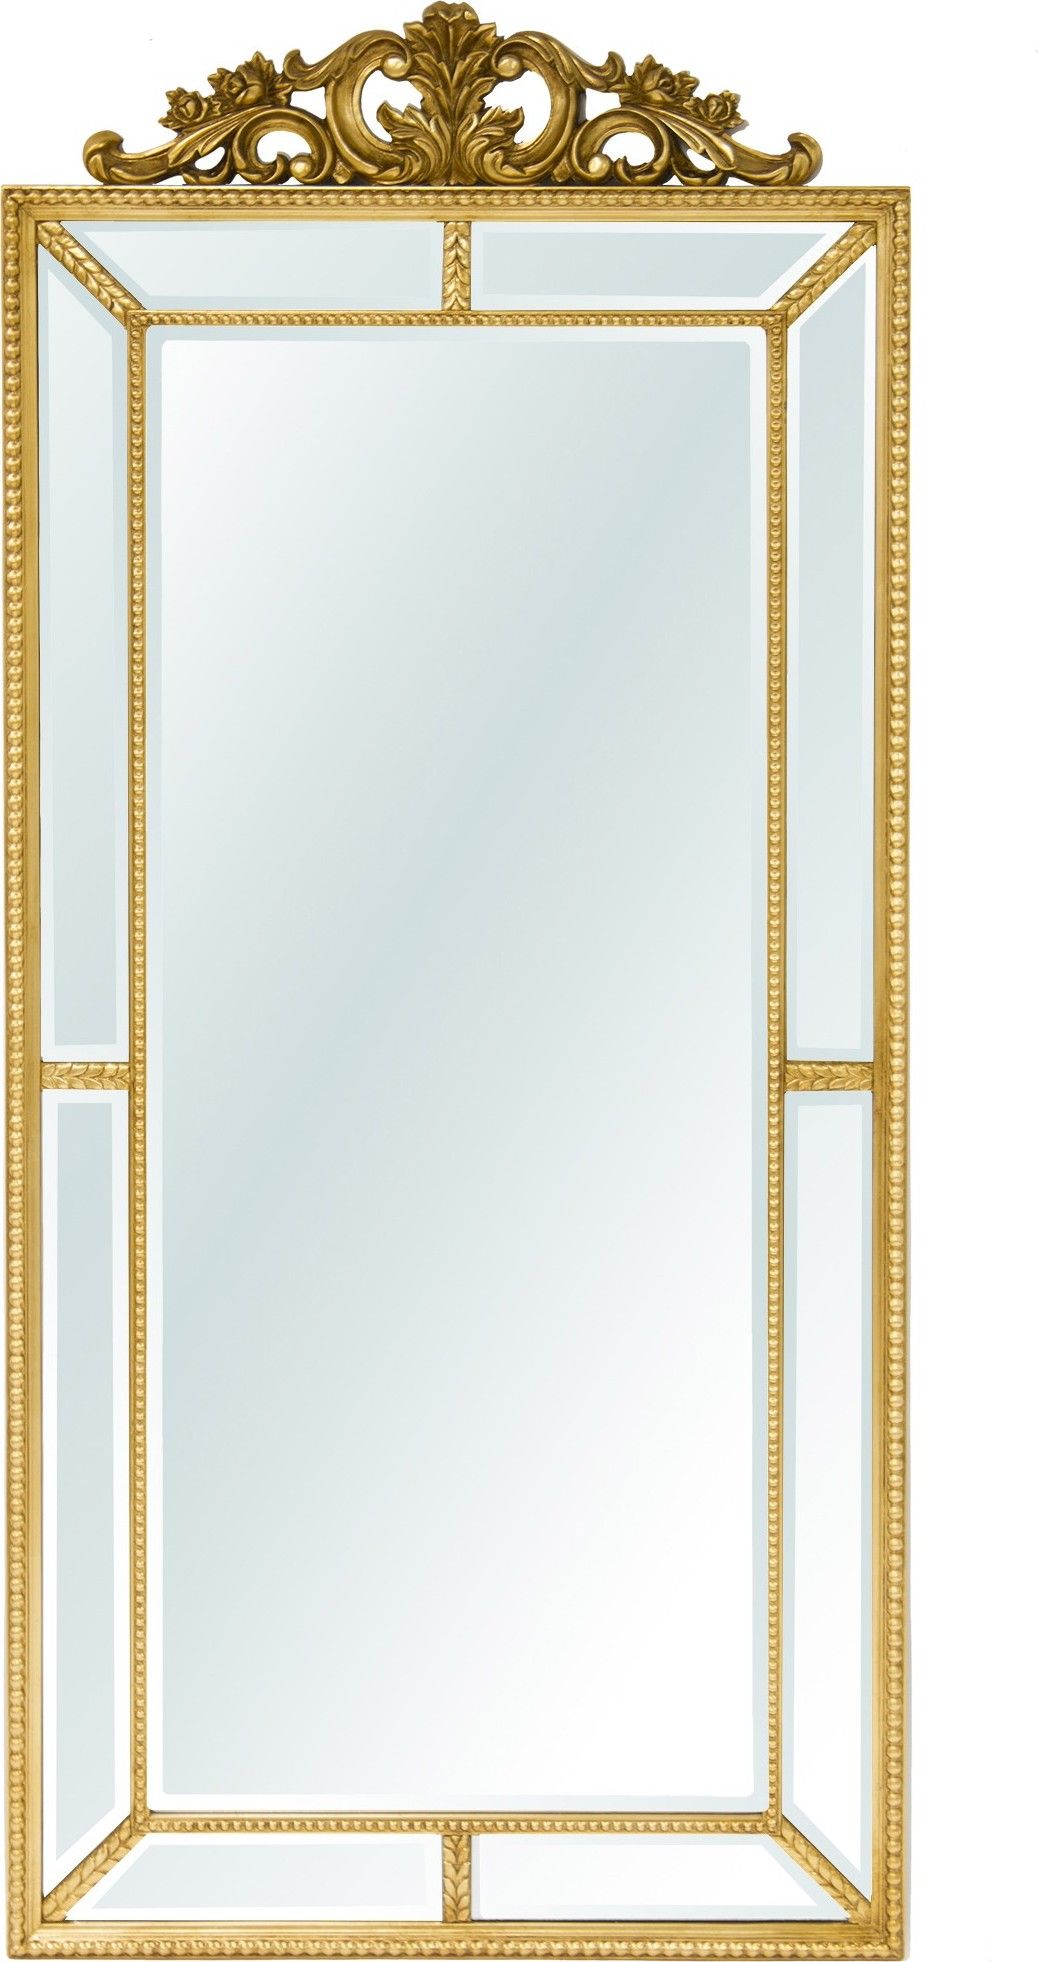 Zlaté zrcadlo s ornamentem 116321 Mdum - M DUM.cz